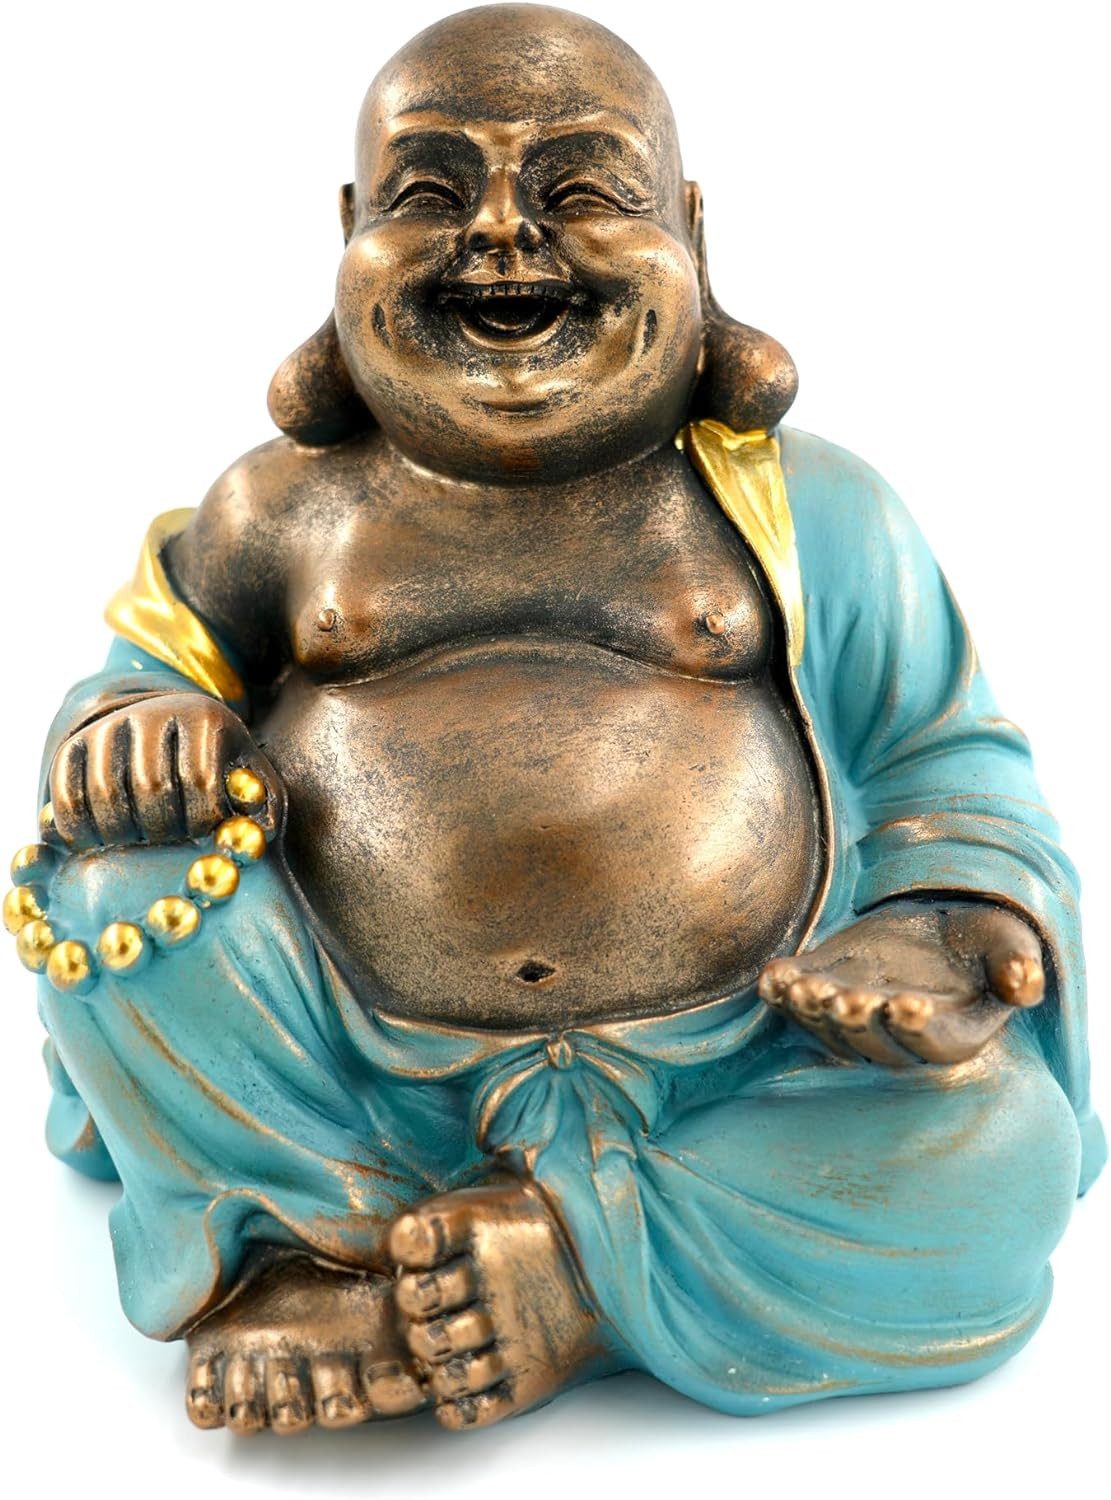 MF Buddhafigur Harmonische Buddha-Skulptur 'Mint Green', 23 cm - Glücksbringer